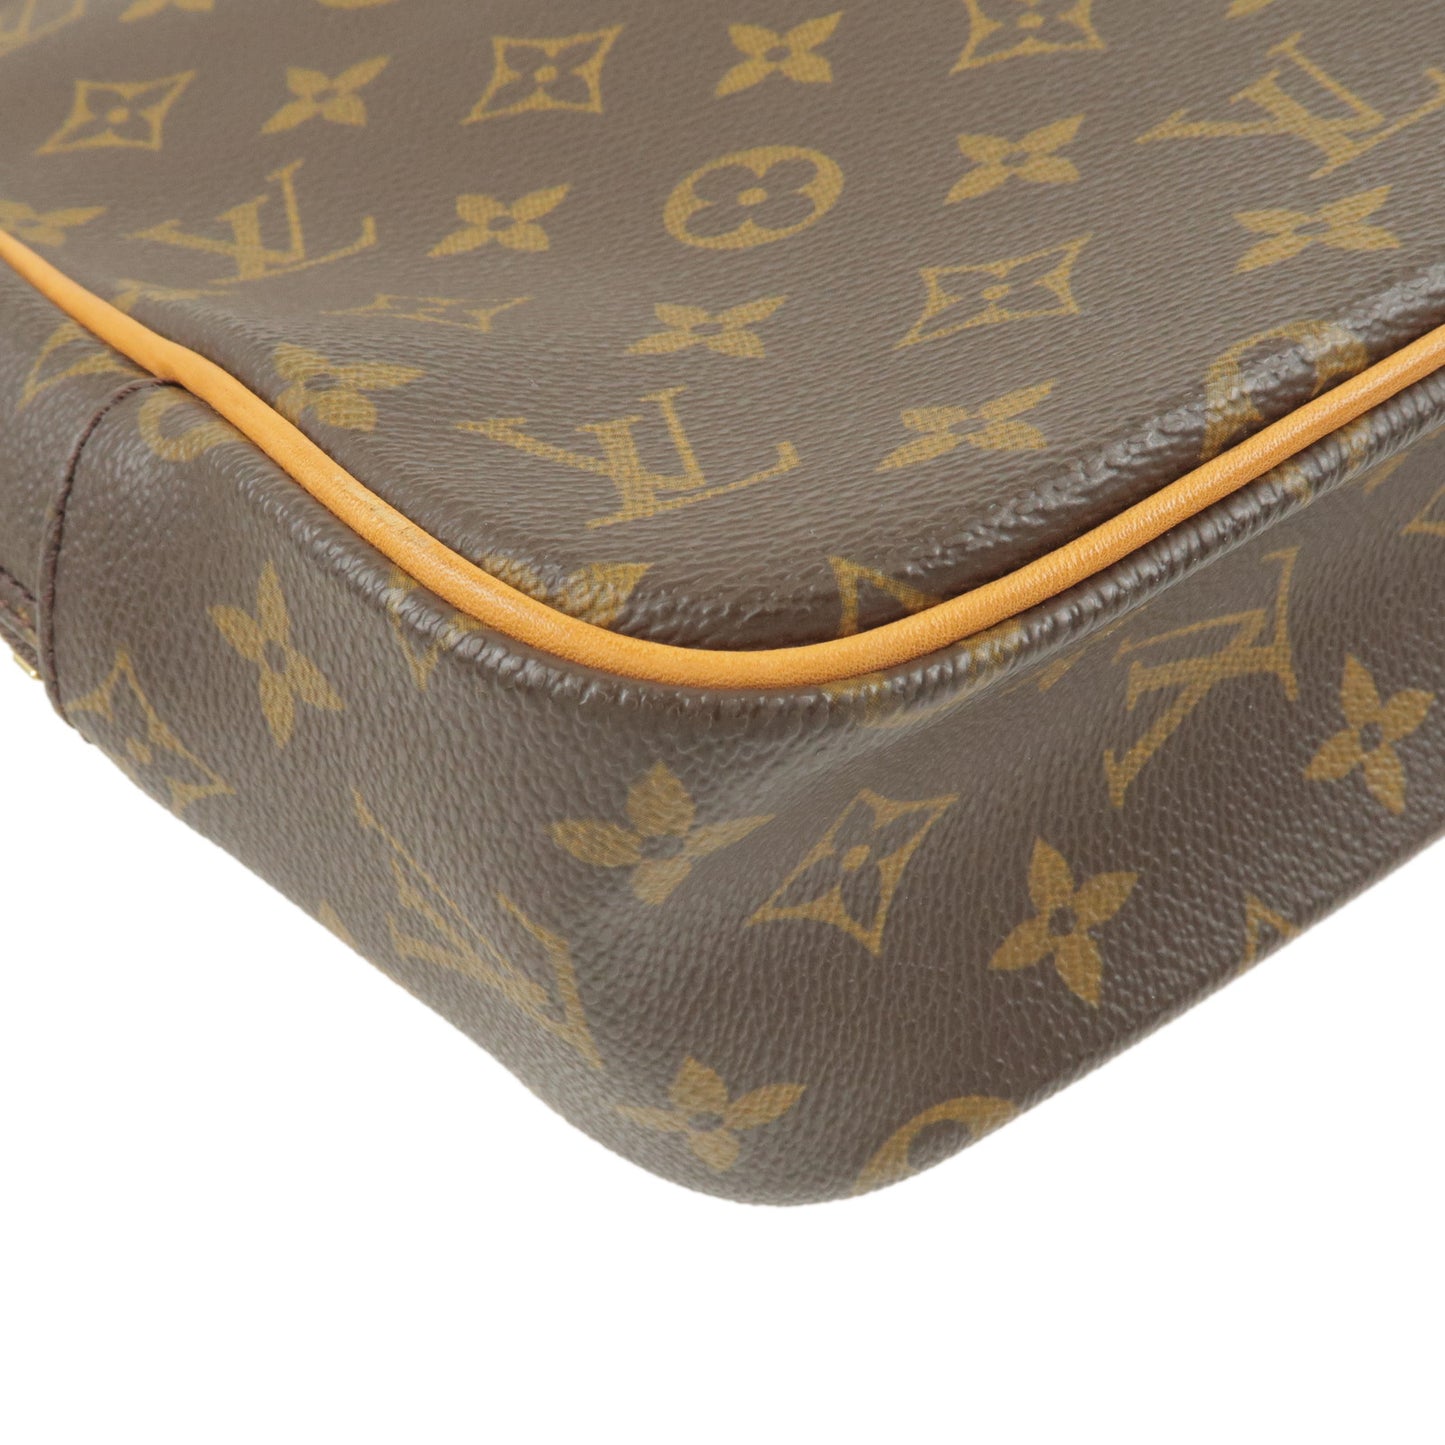 Louis Vuitton Monogram Porte-Documents Pegase Business Bag M53343